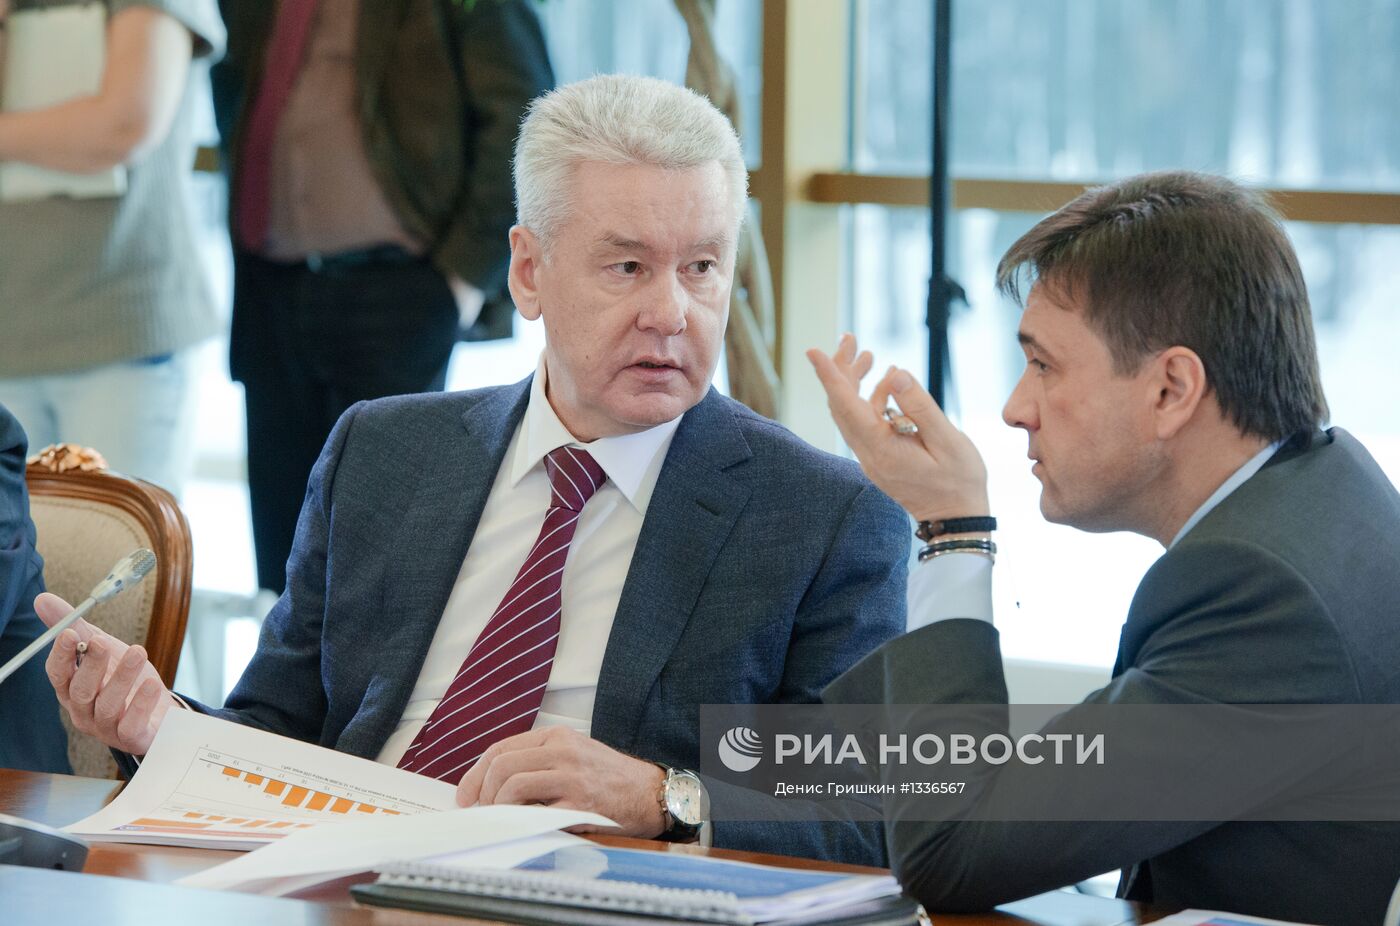 Д.Медведев провел совещание в аэропорту "Внуково" в Москве